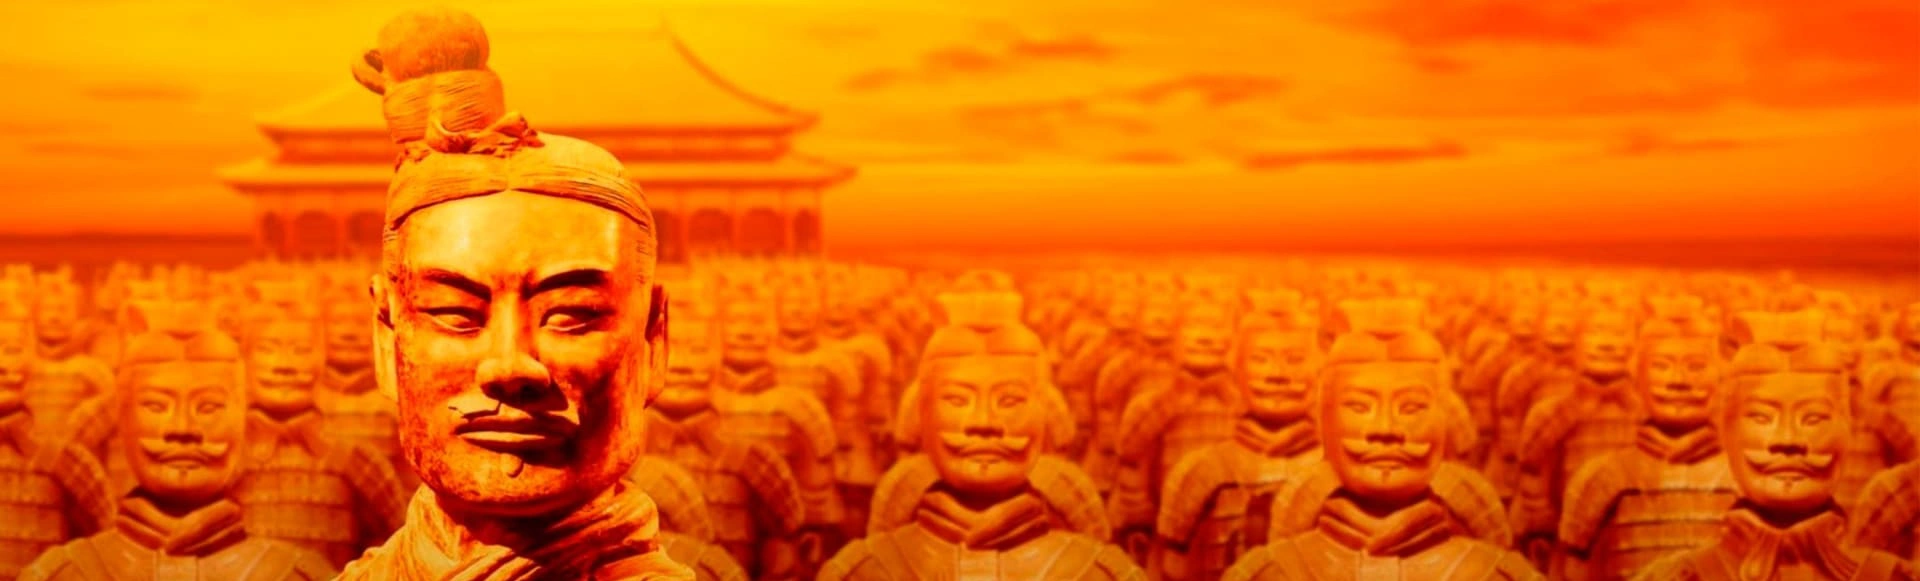 Выставка-реконструкция «Терракотовая армия. Бессмертные воины Китая» пройдёт на ВДНХ: окунитесь в уникальную культуру